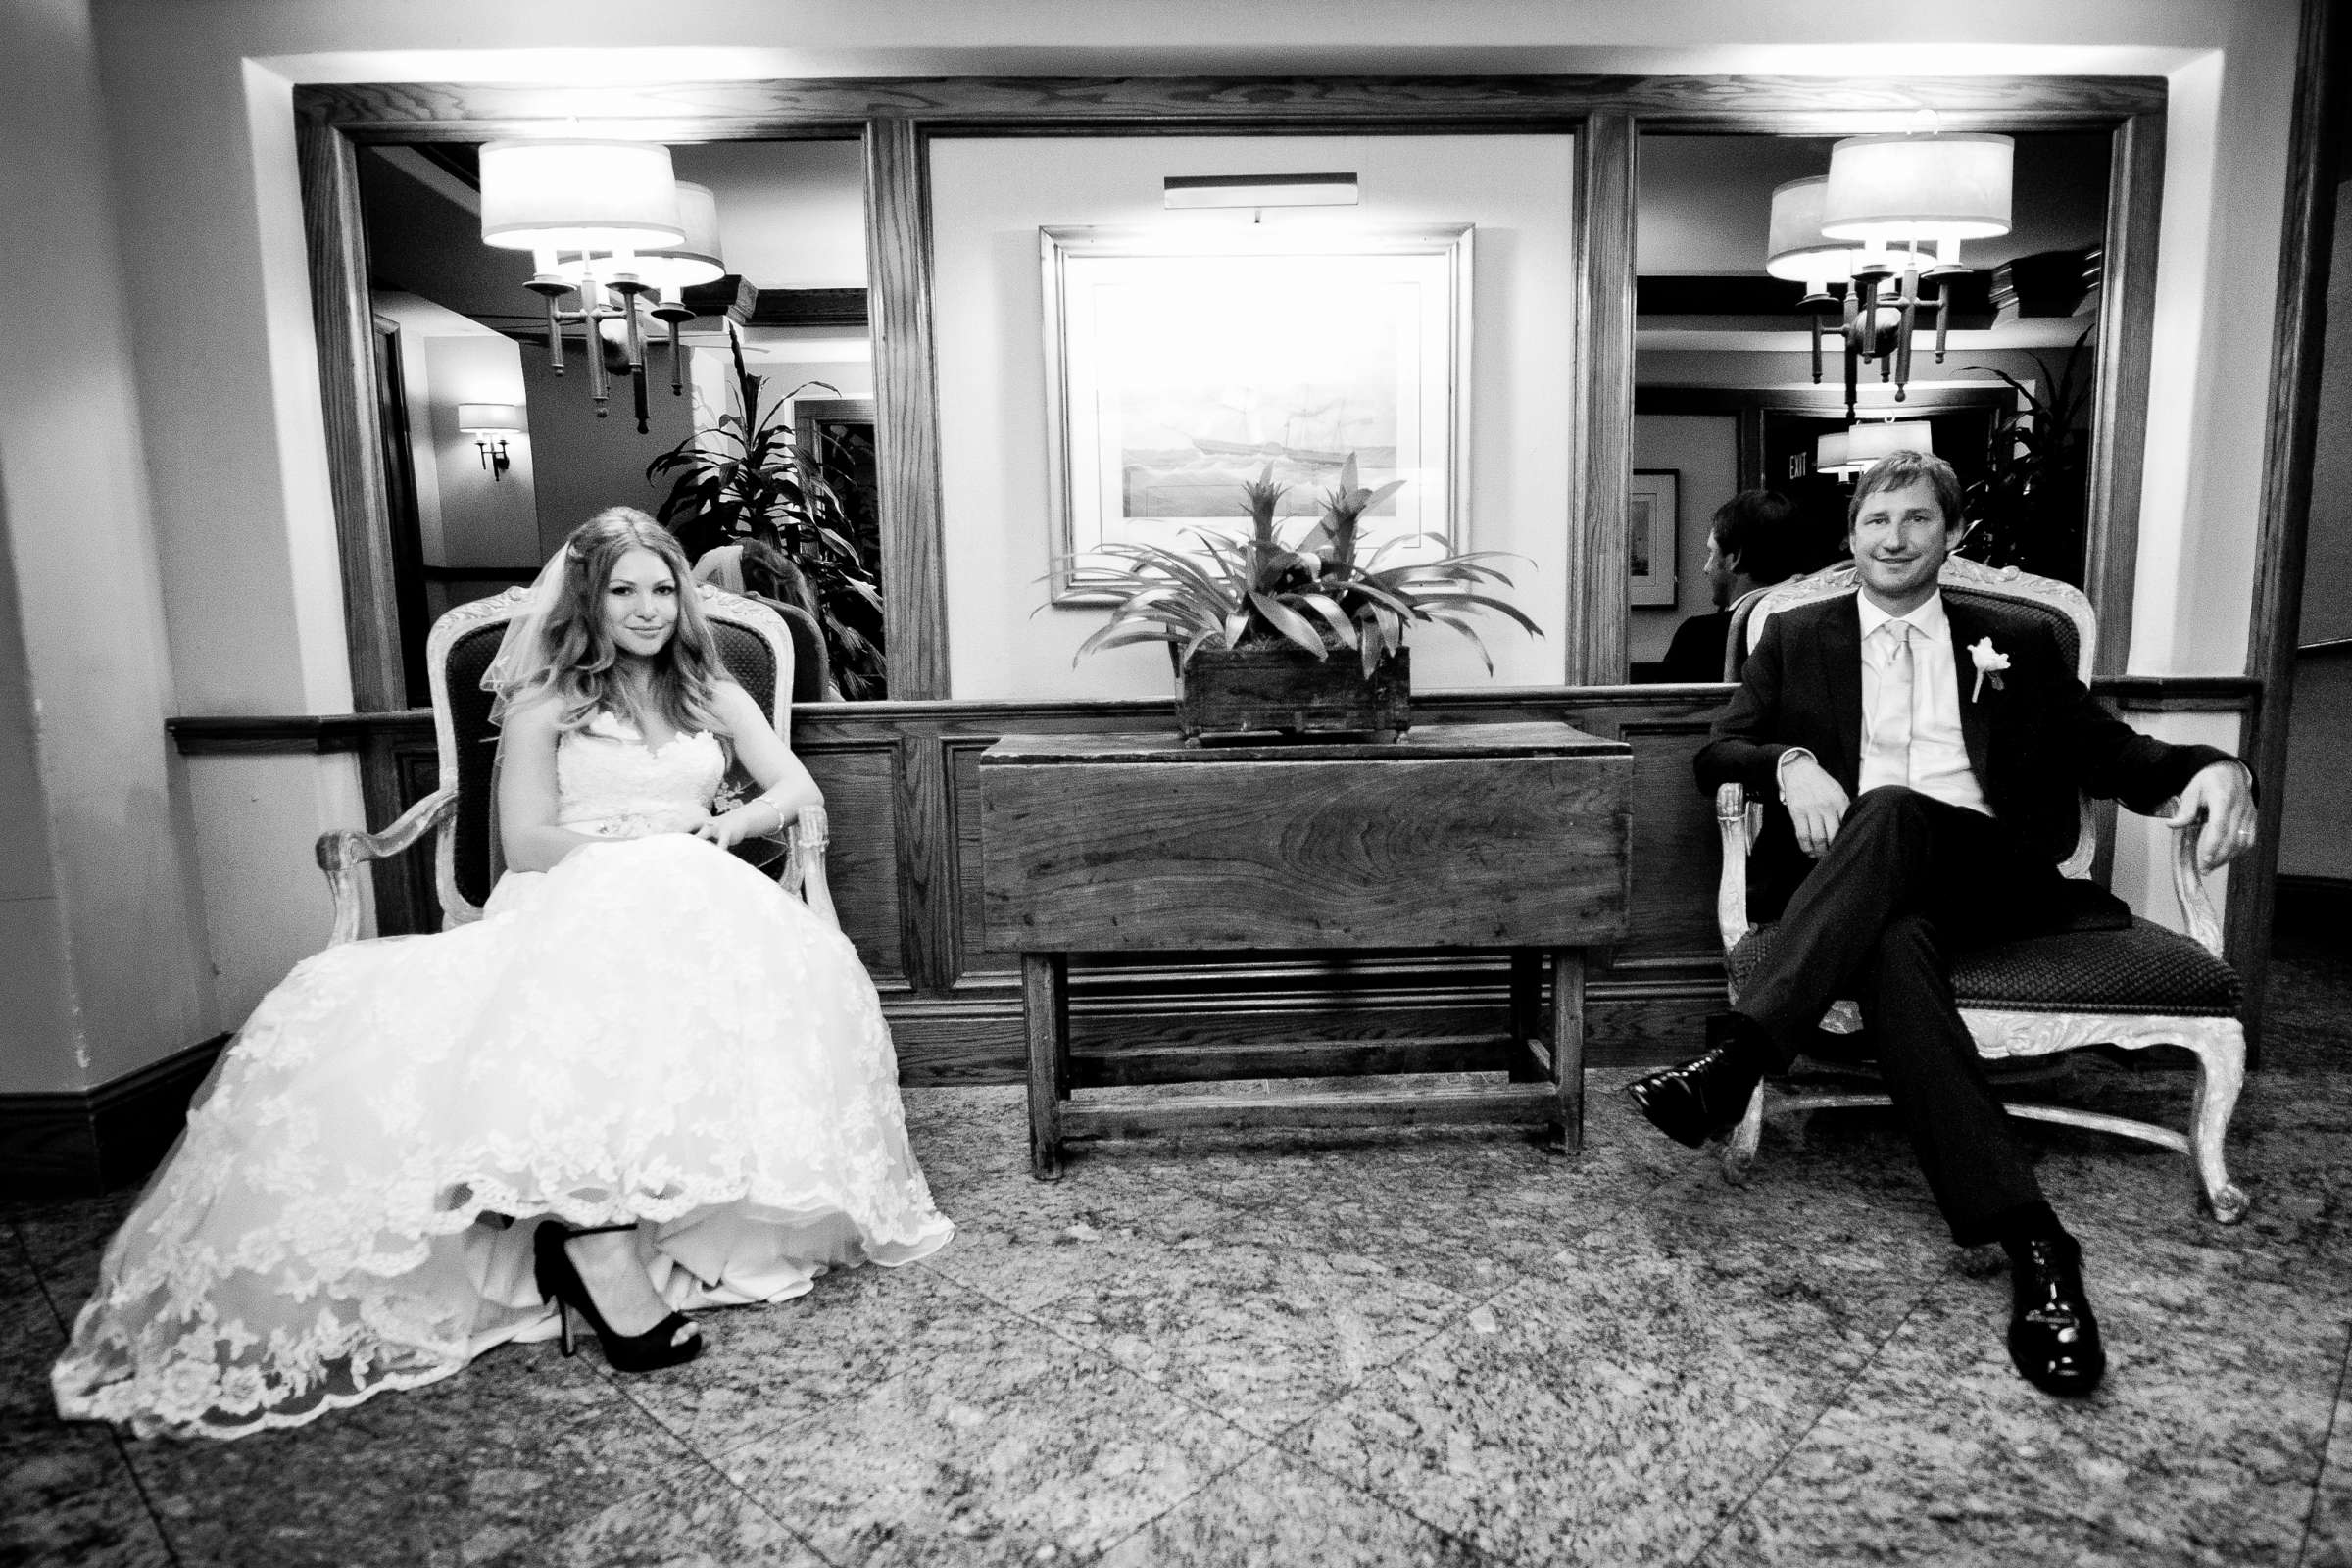 La Valencia Wedding, Eileen and Darrin Wedding Photo #205351 by True Photography